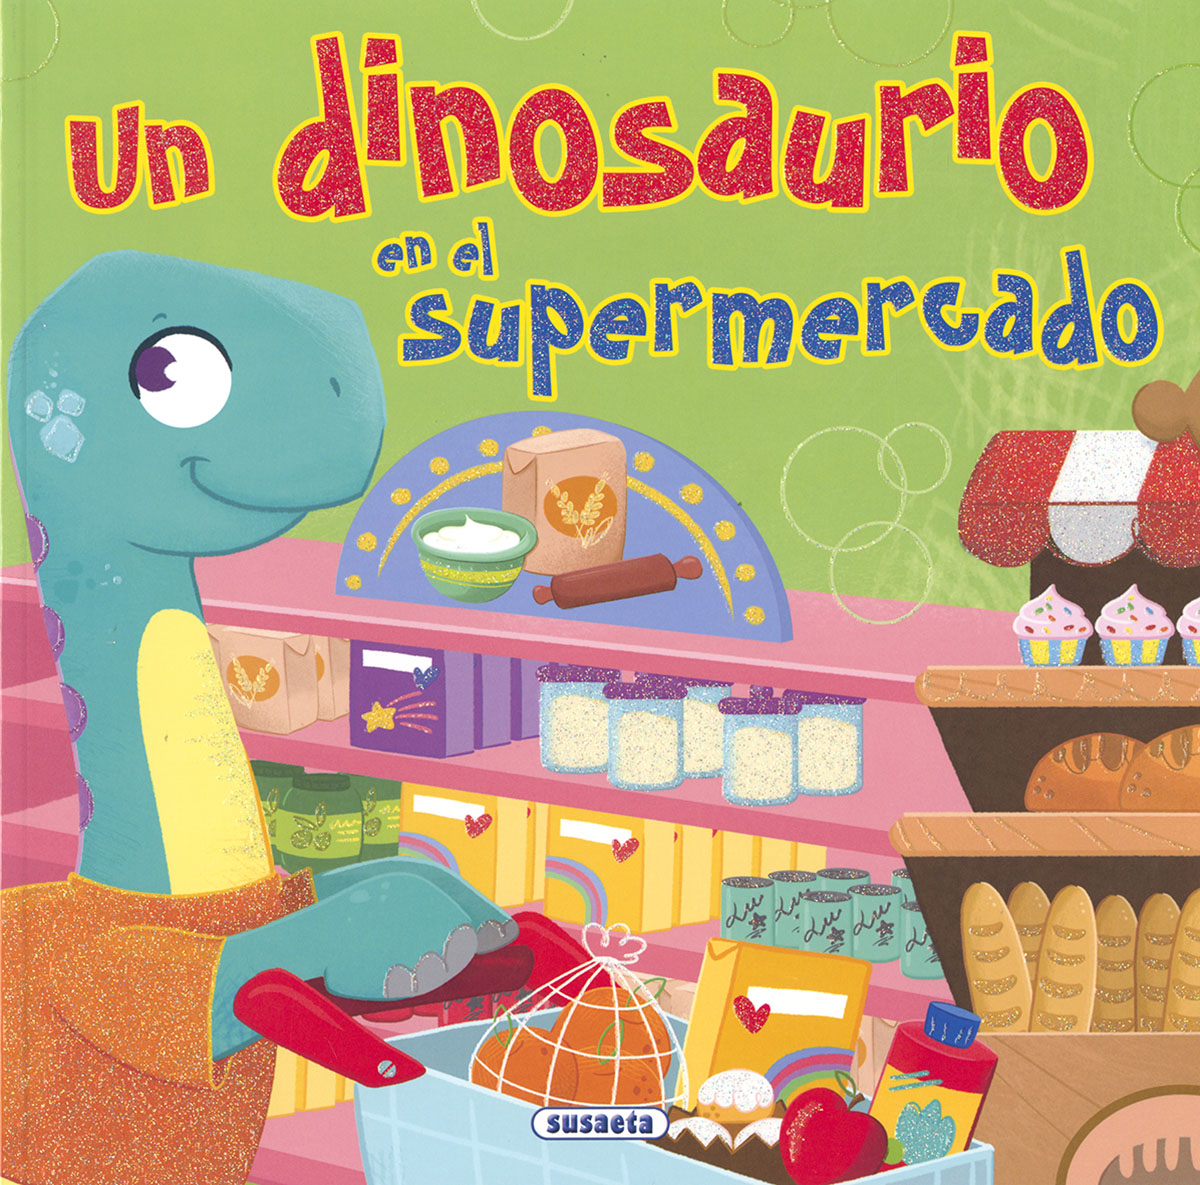 Un dinosaurio en el supermercado